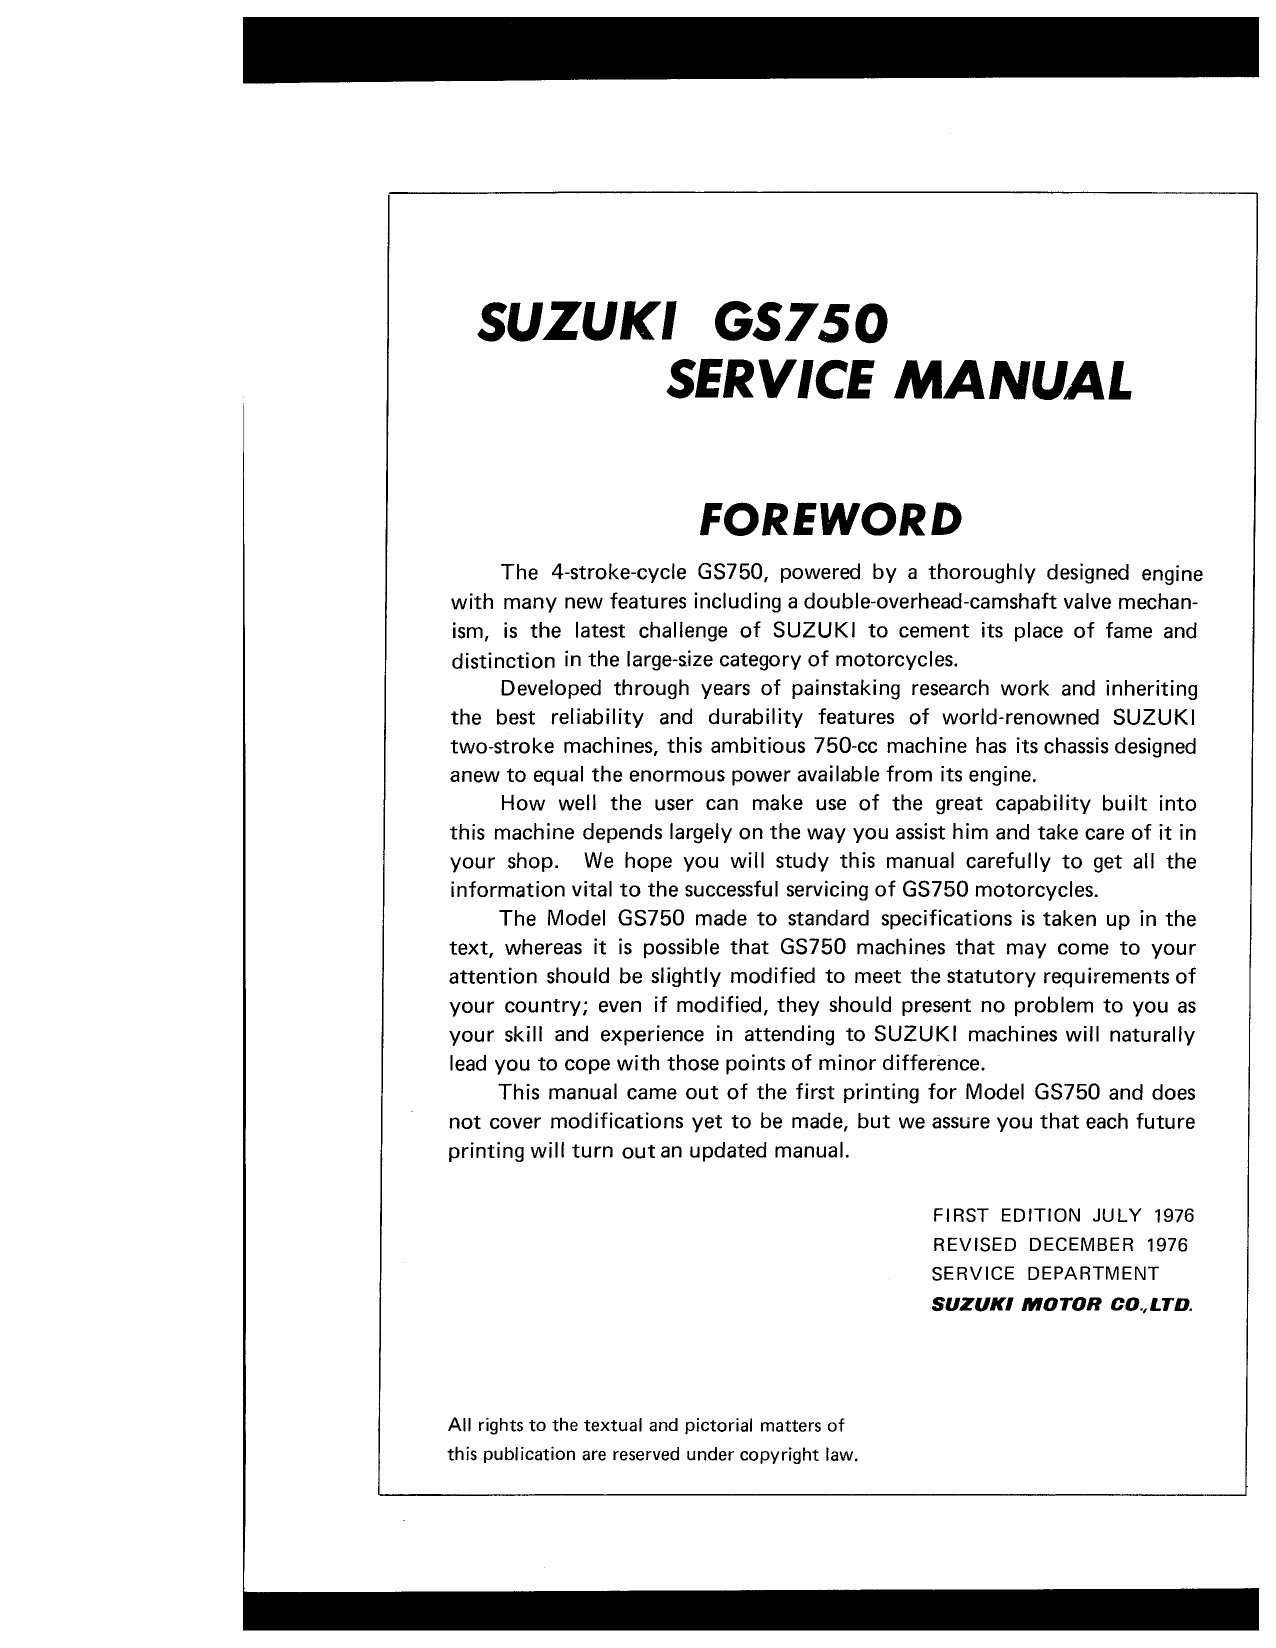 1976-1983 Suzuki GS 750 repair, shop manual Preview image 2